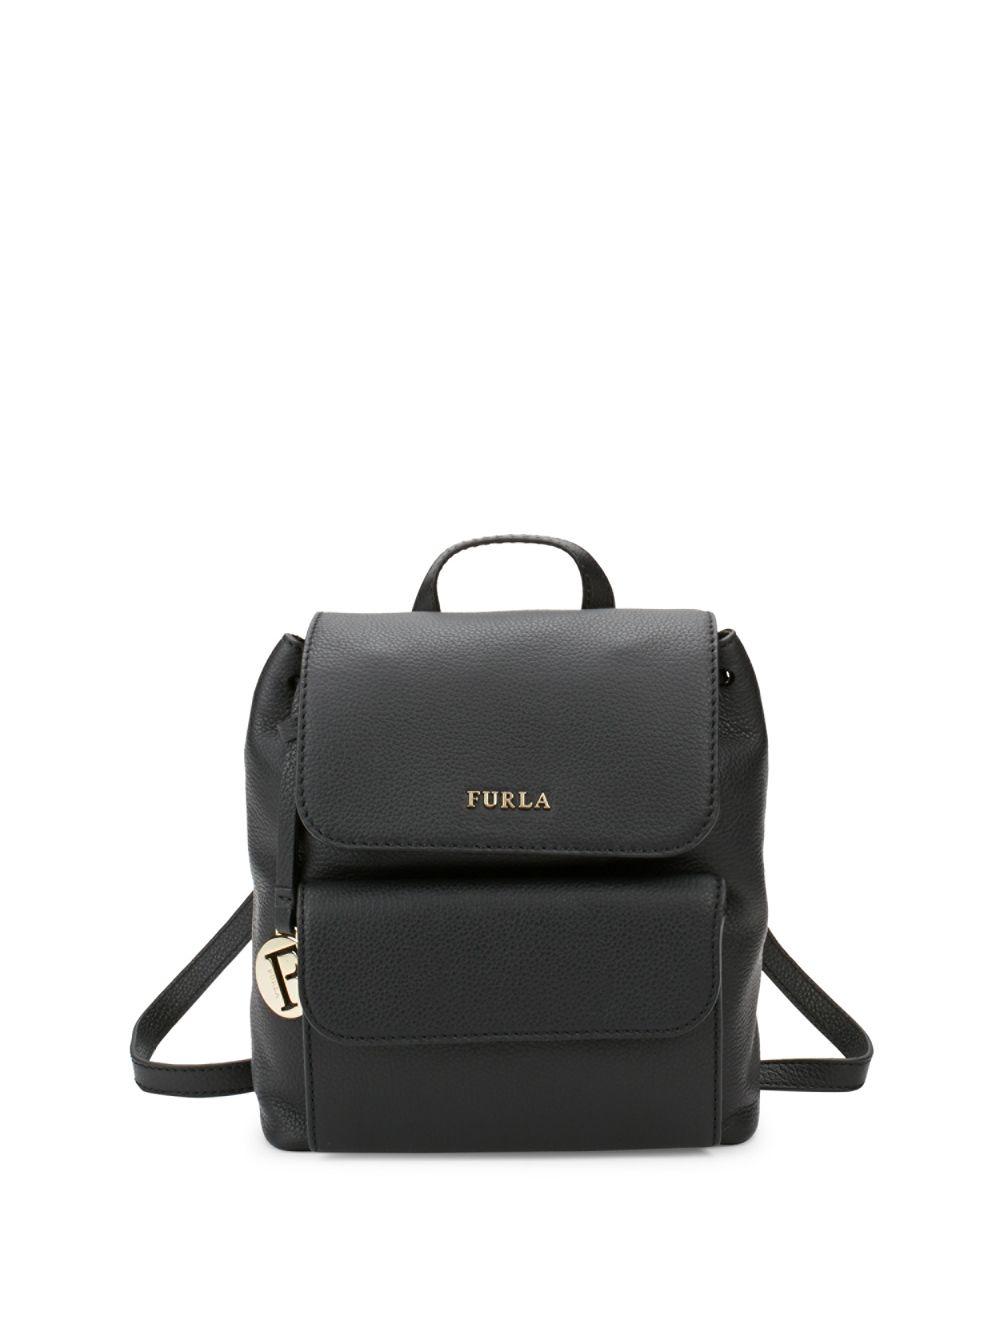 Furla Noemi Leather Mini Backpack in Black | Lyst